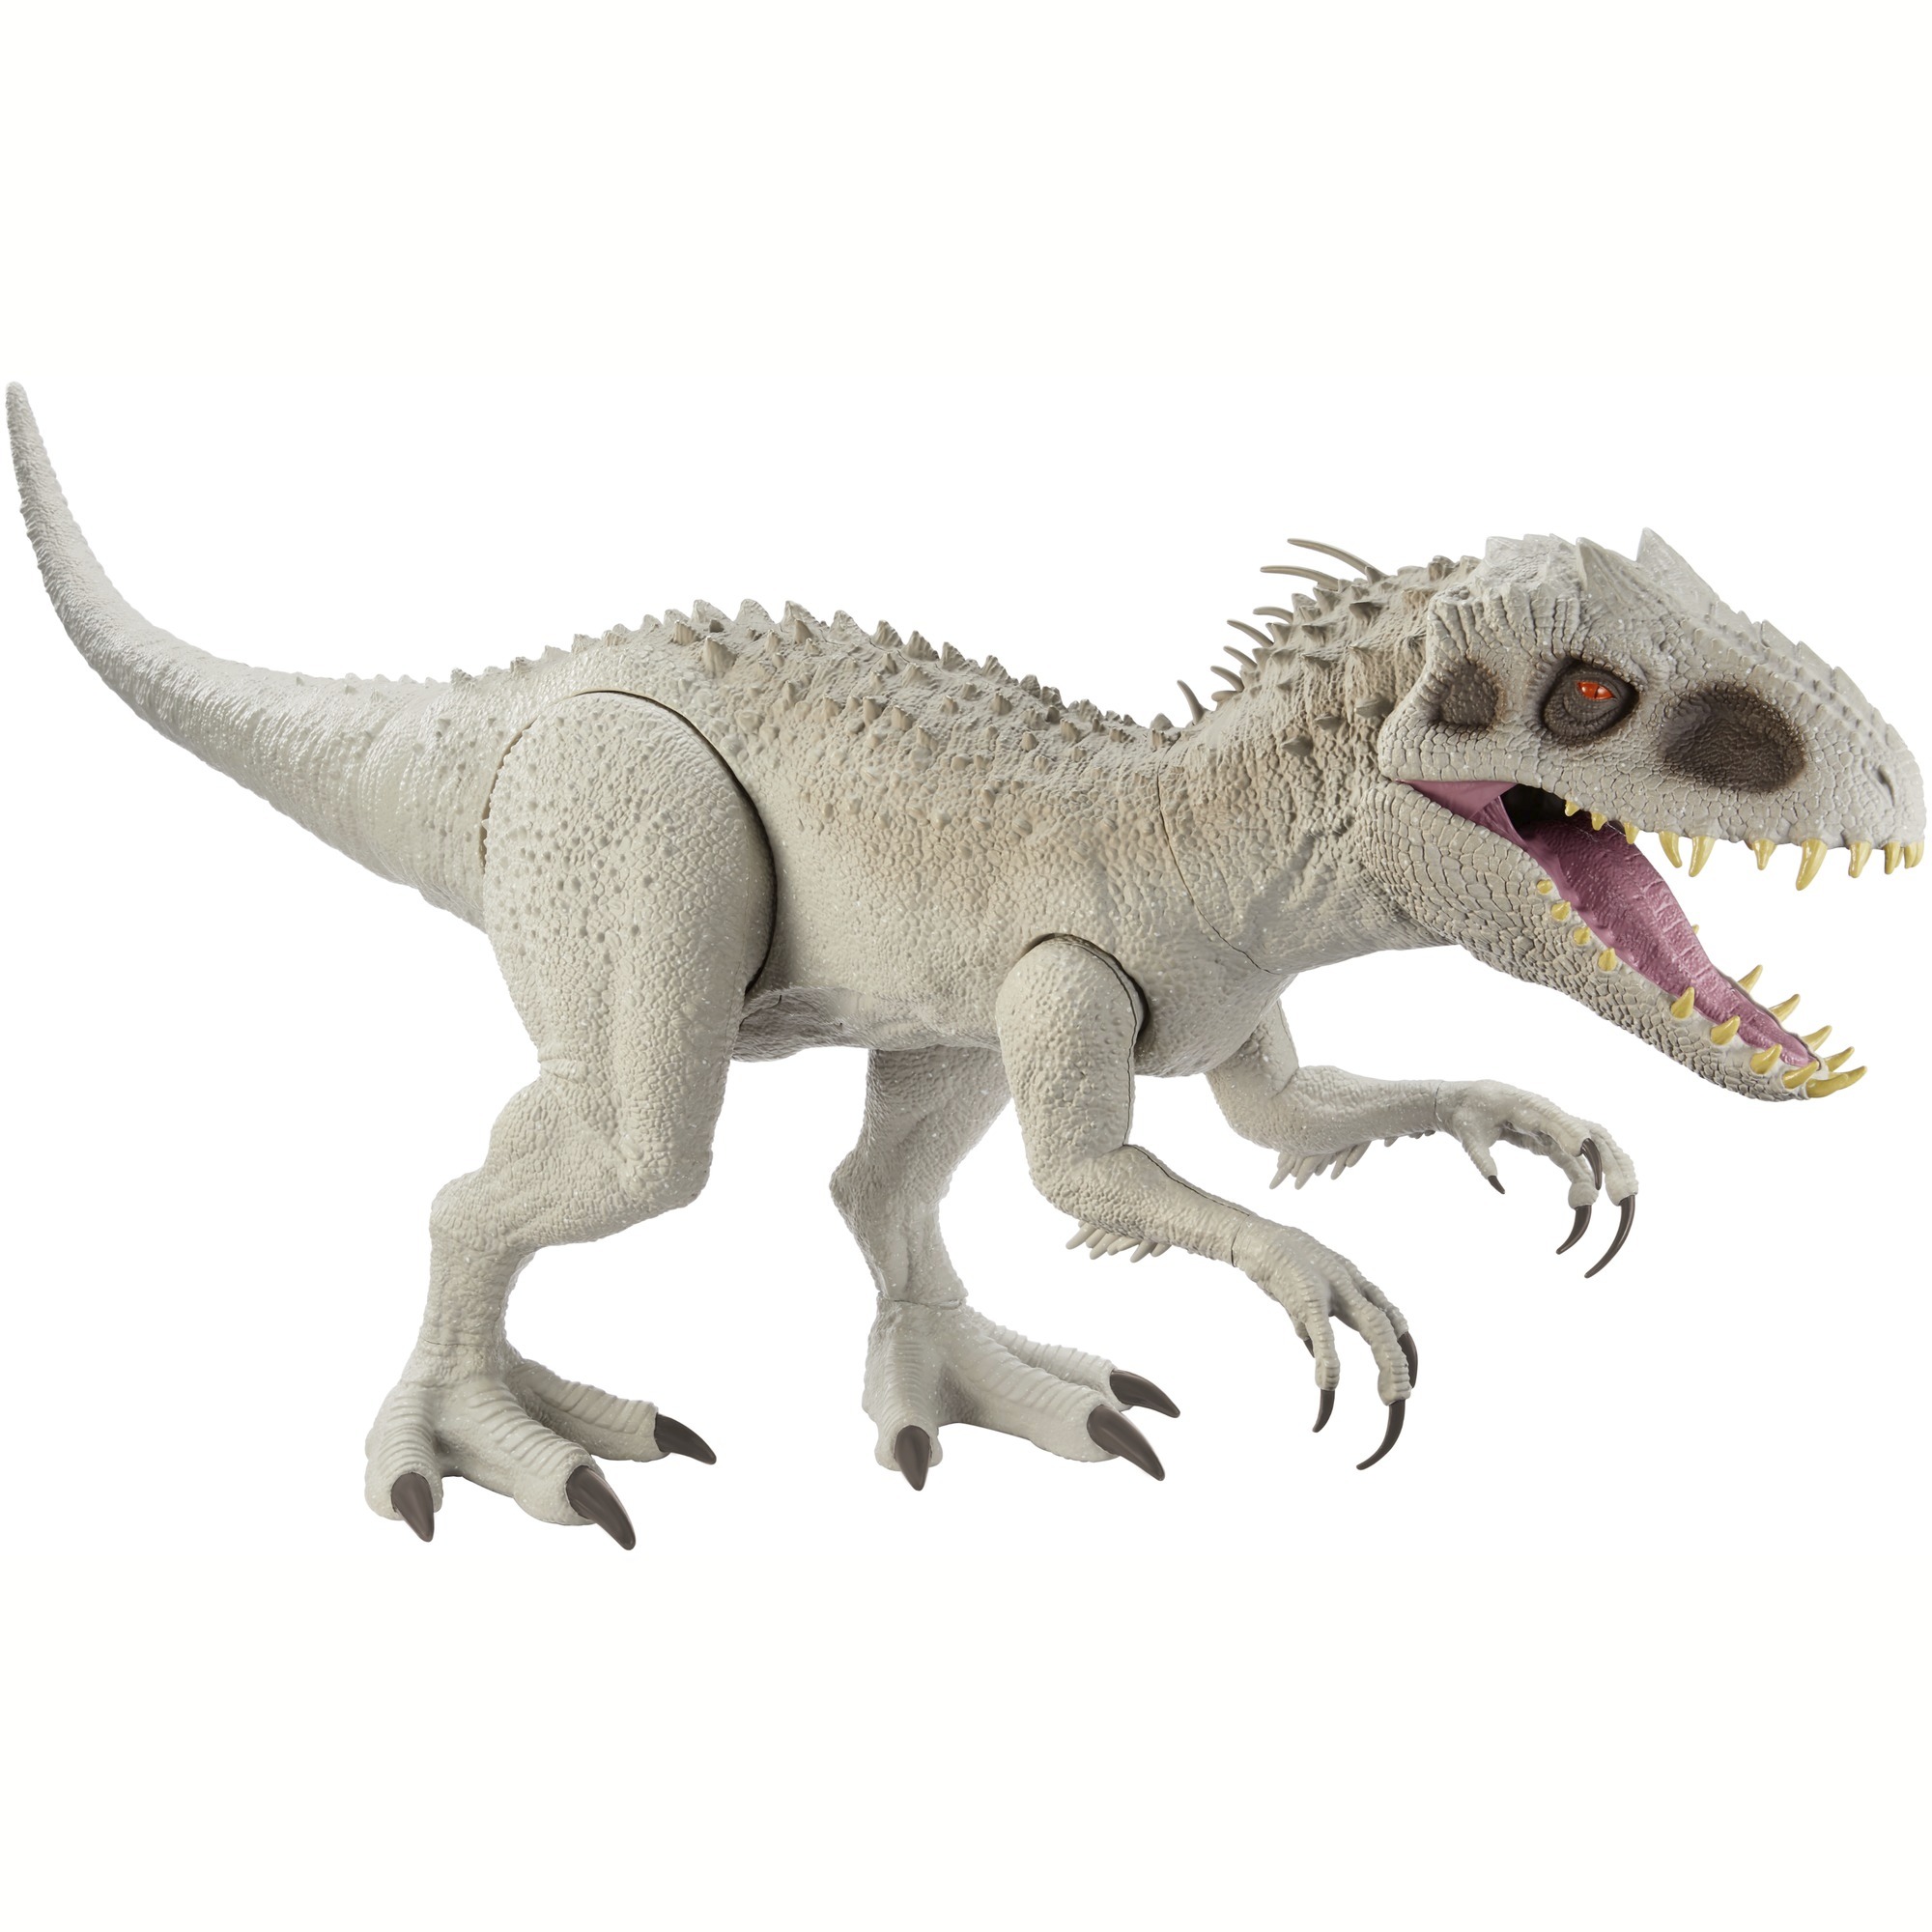 2 Stück Indominus Rex XXL Große Dinosaurierfigur in Originalgröße Lego-Spielzeug 